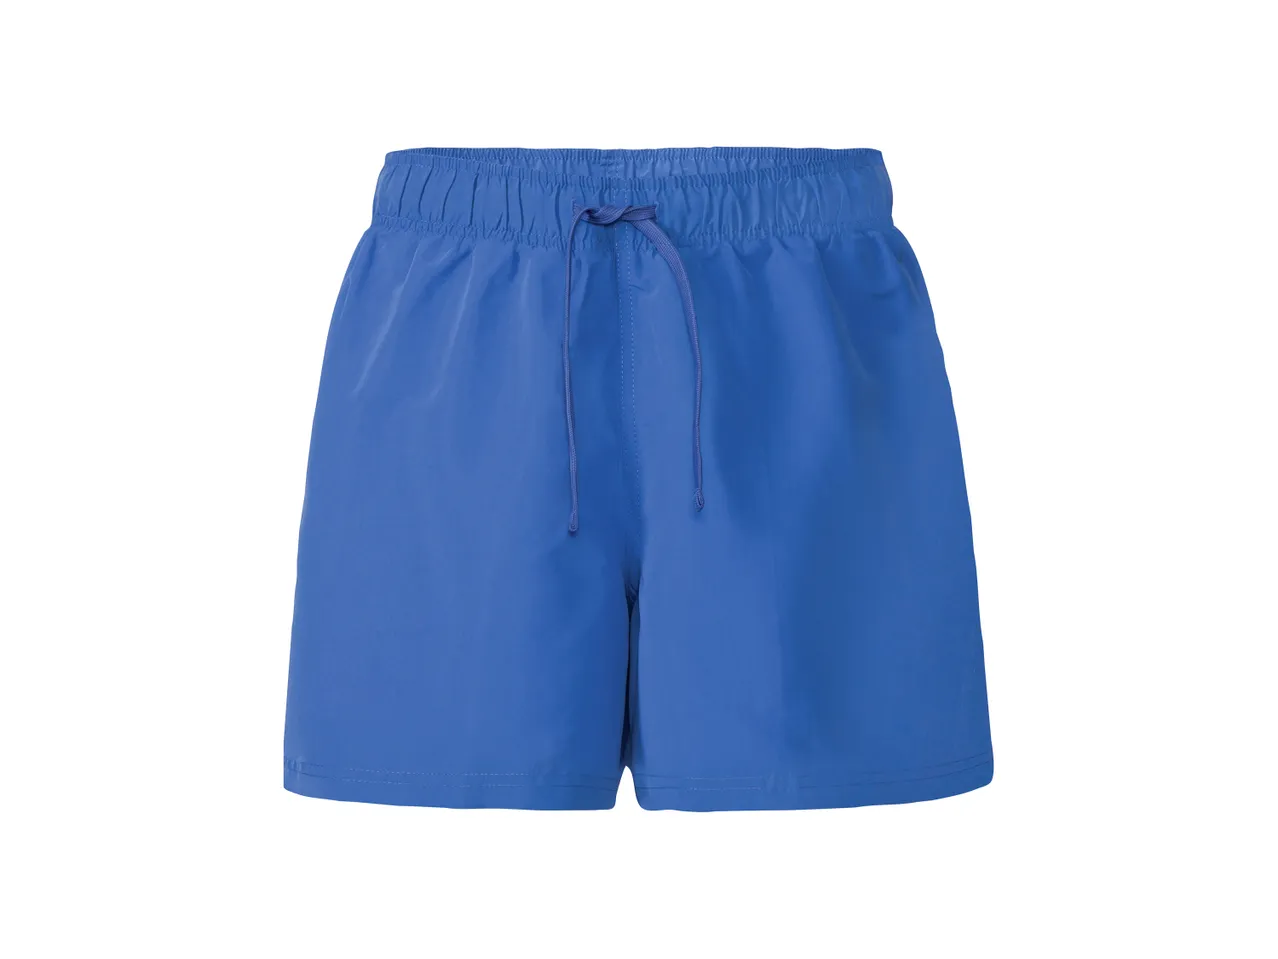 Shorts mare da uomo , prezzo 5.99 EUR